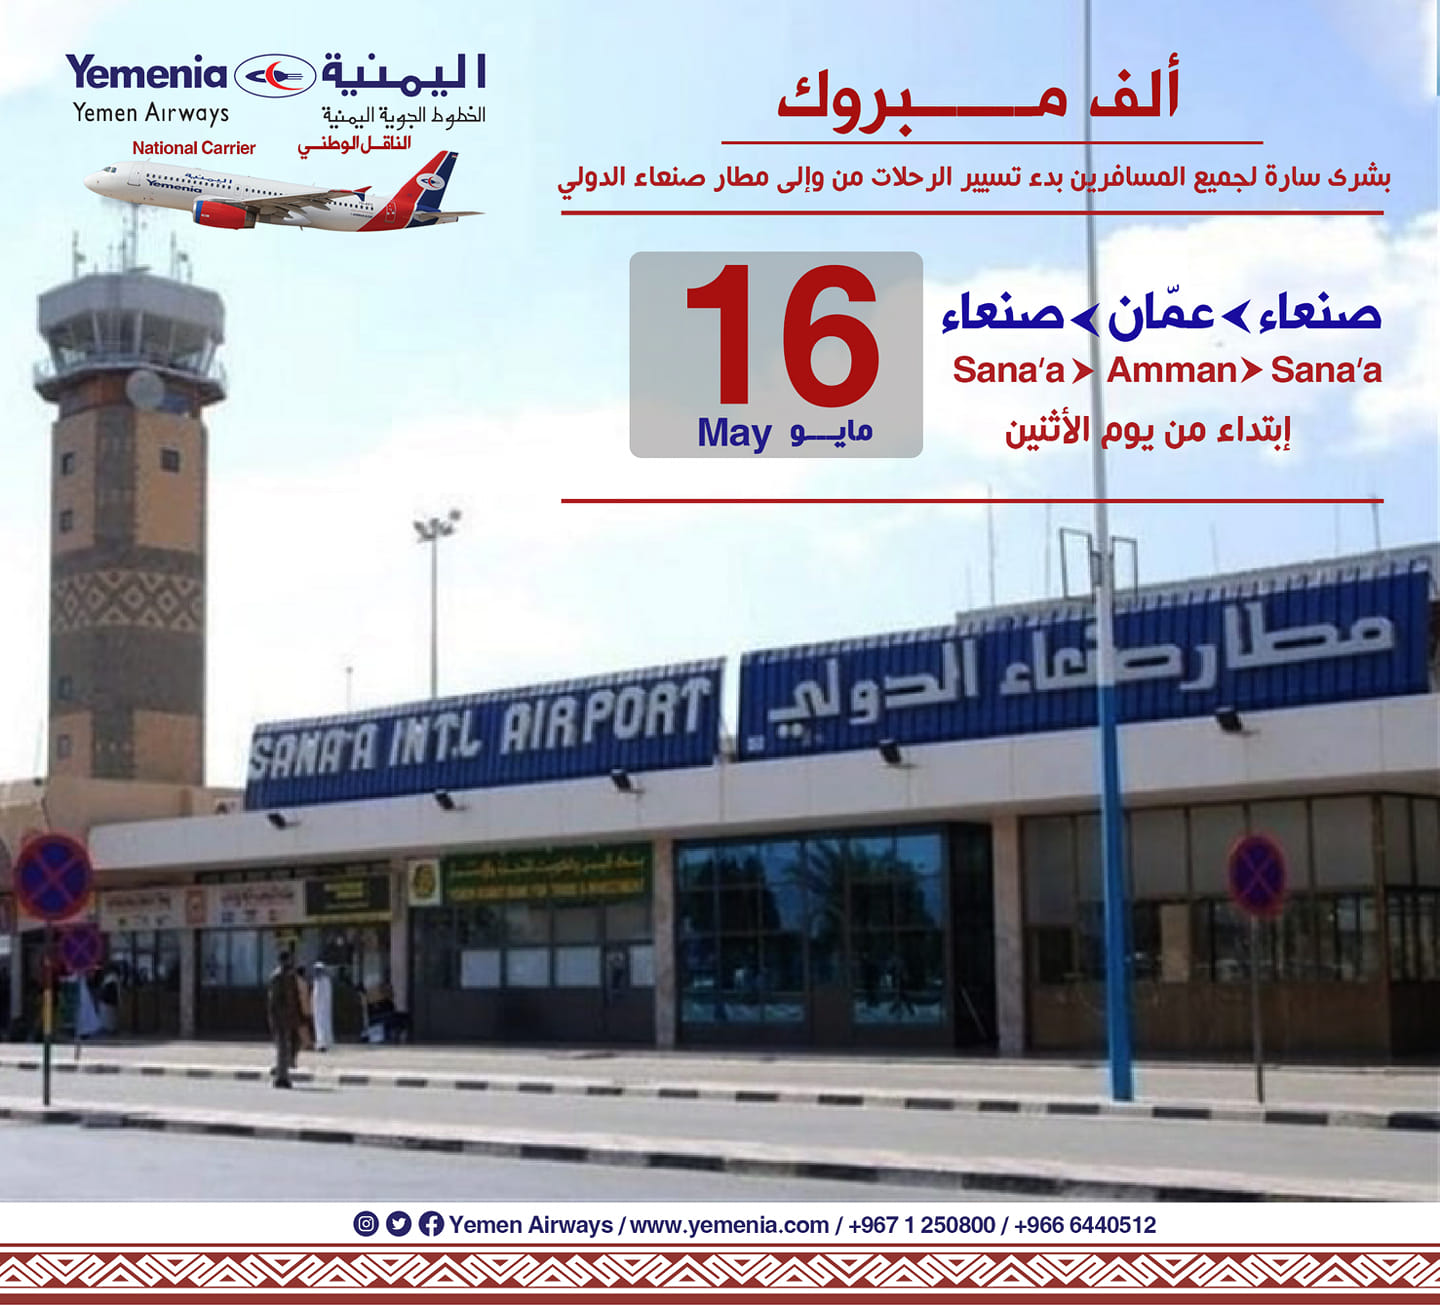 بالصور: وصول أول طائرة مدنية إلى مطار صنعاء بعد توقف دام ست سنوات